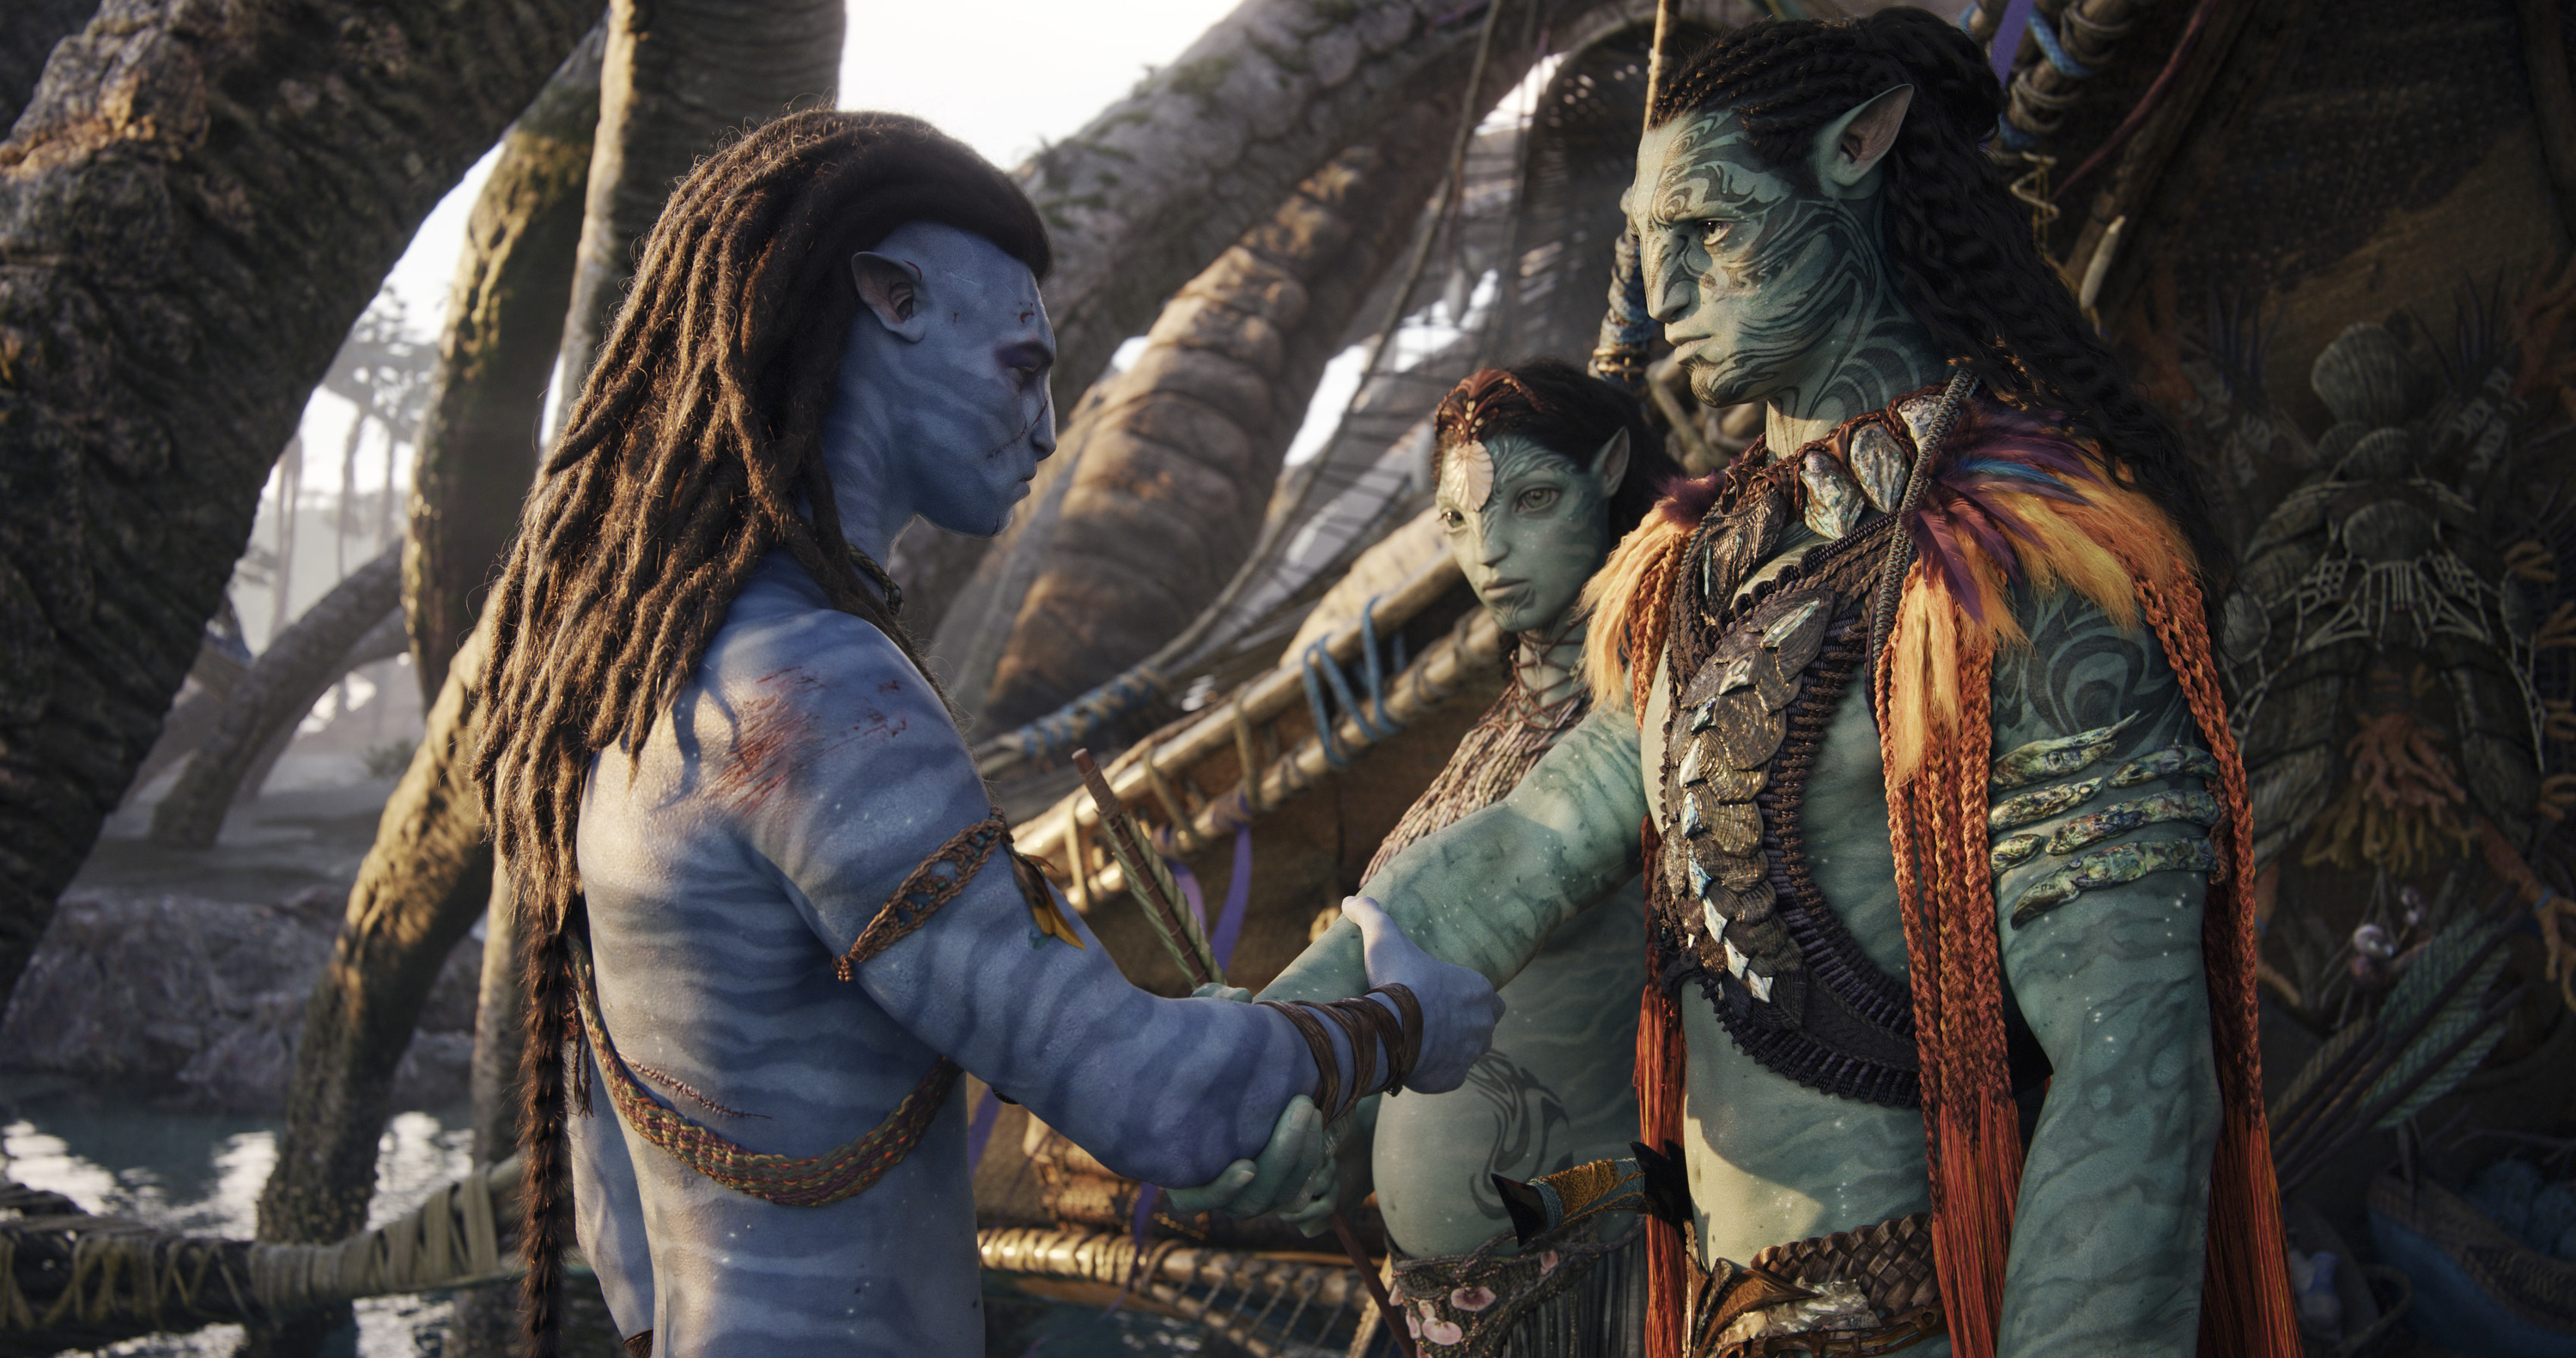 "Avatar : la voie de l'eau" a rapporté 850 millions de dollars en 10 jours au box-office - d'ici la veille du Nouvel An, le box-office atteindra 1 milliard de dollars.